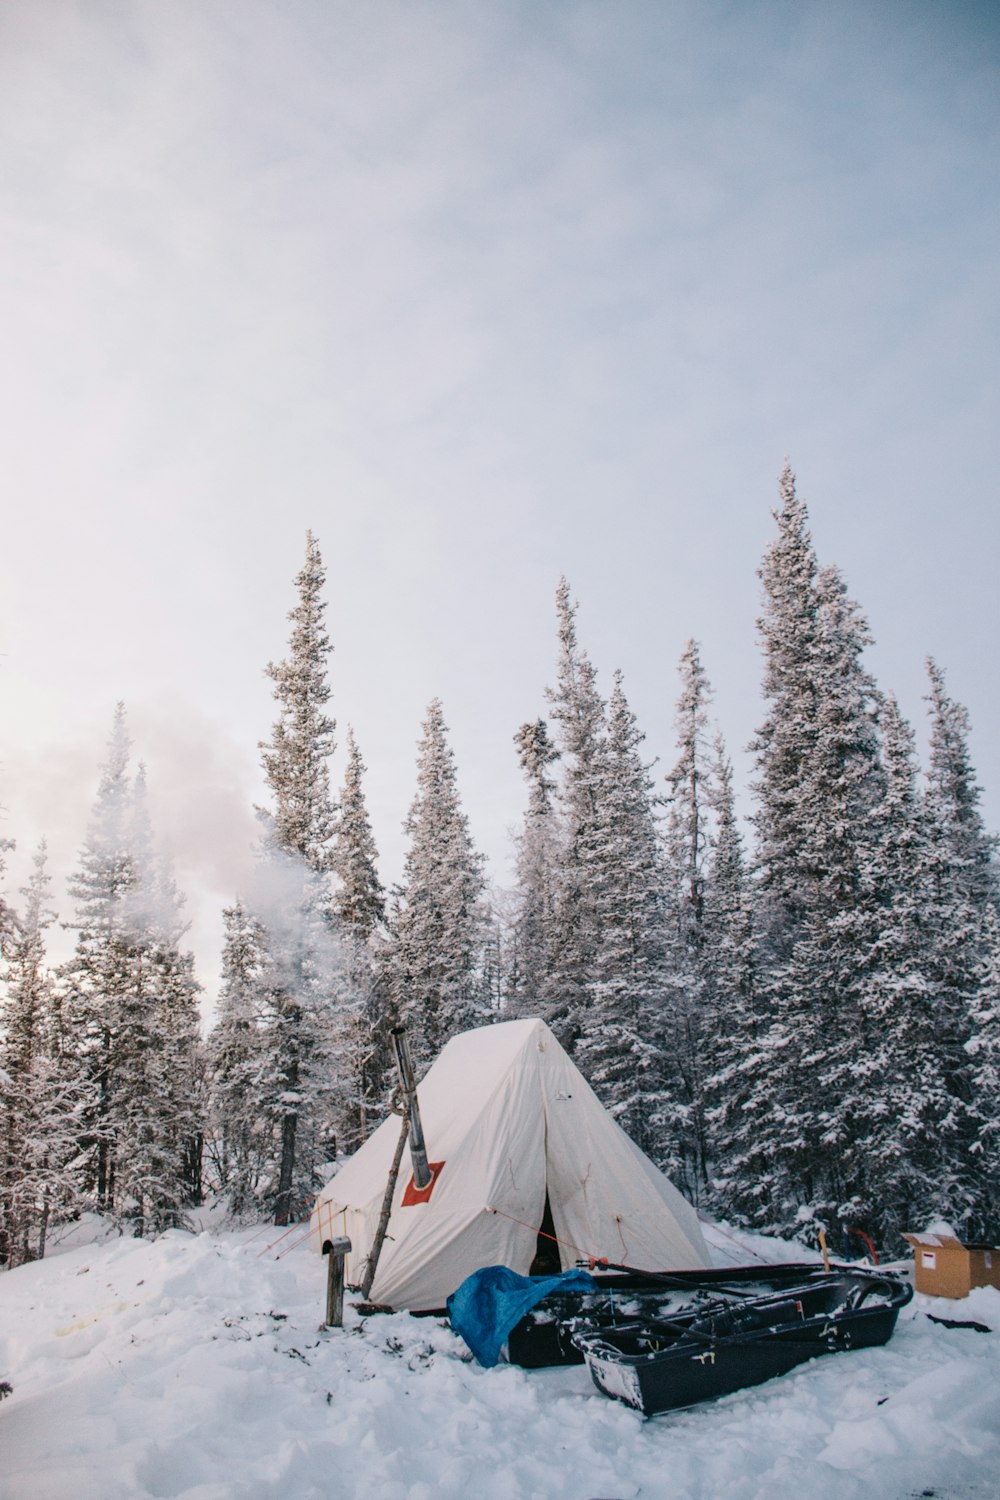 雪に覆われた松の木のそばに白いテント